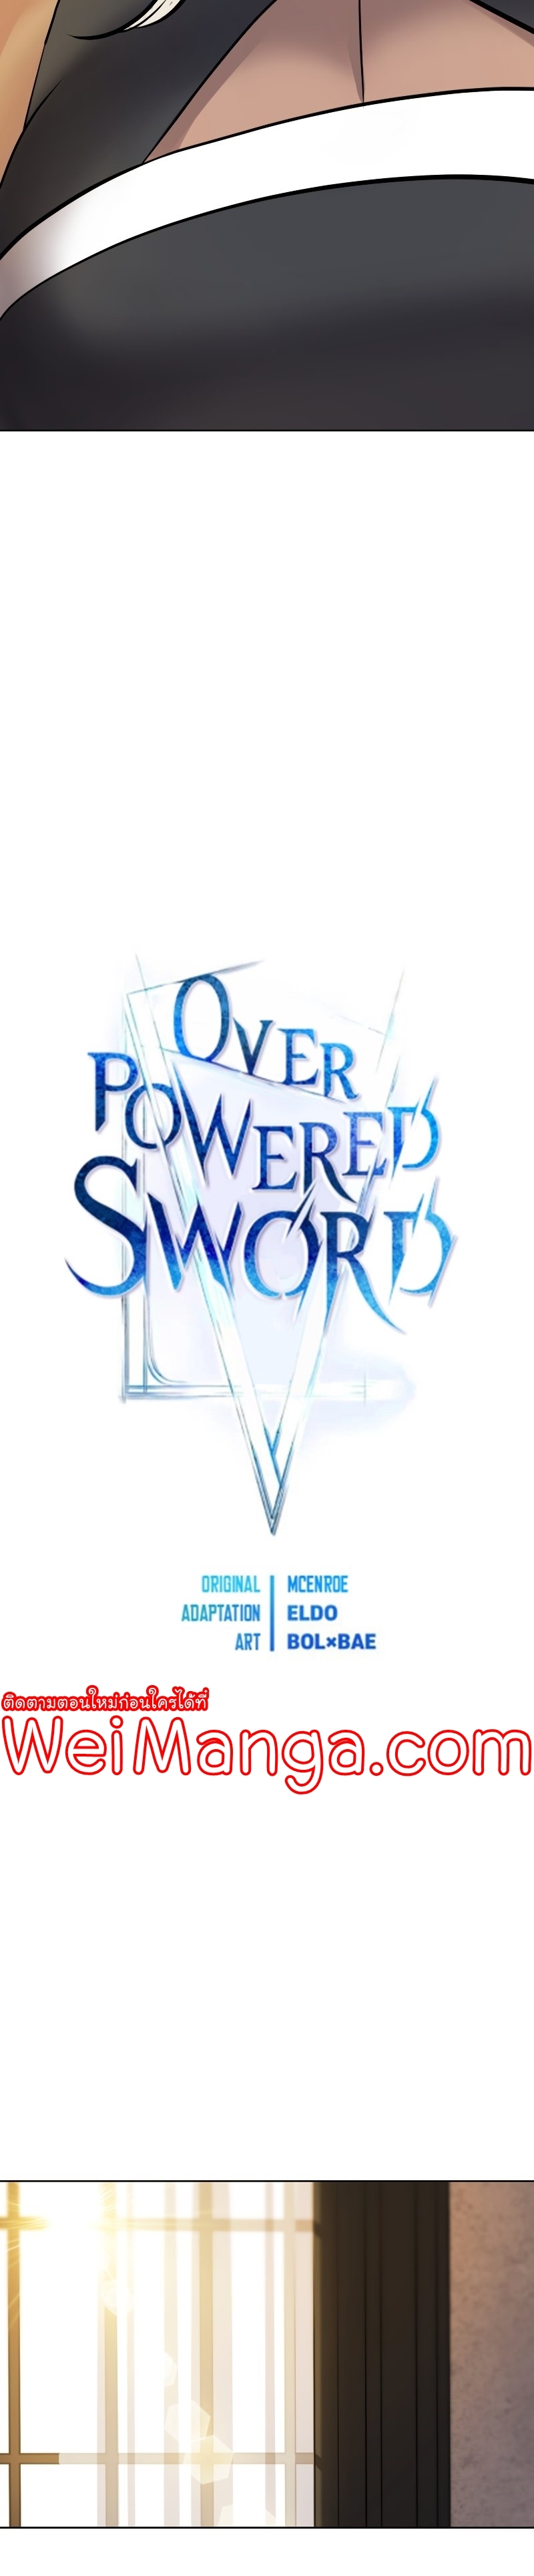 Overpowered Sword 44 (3)